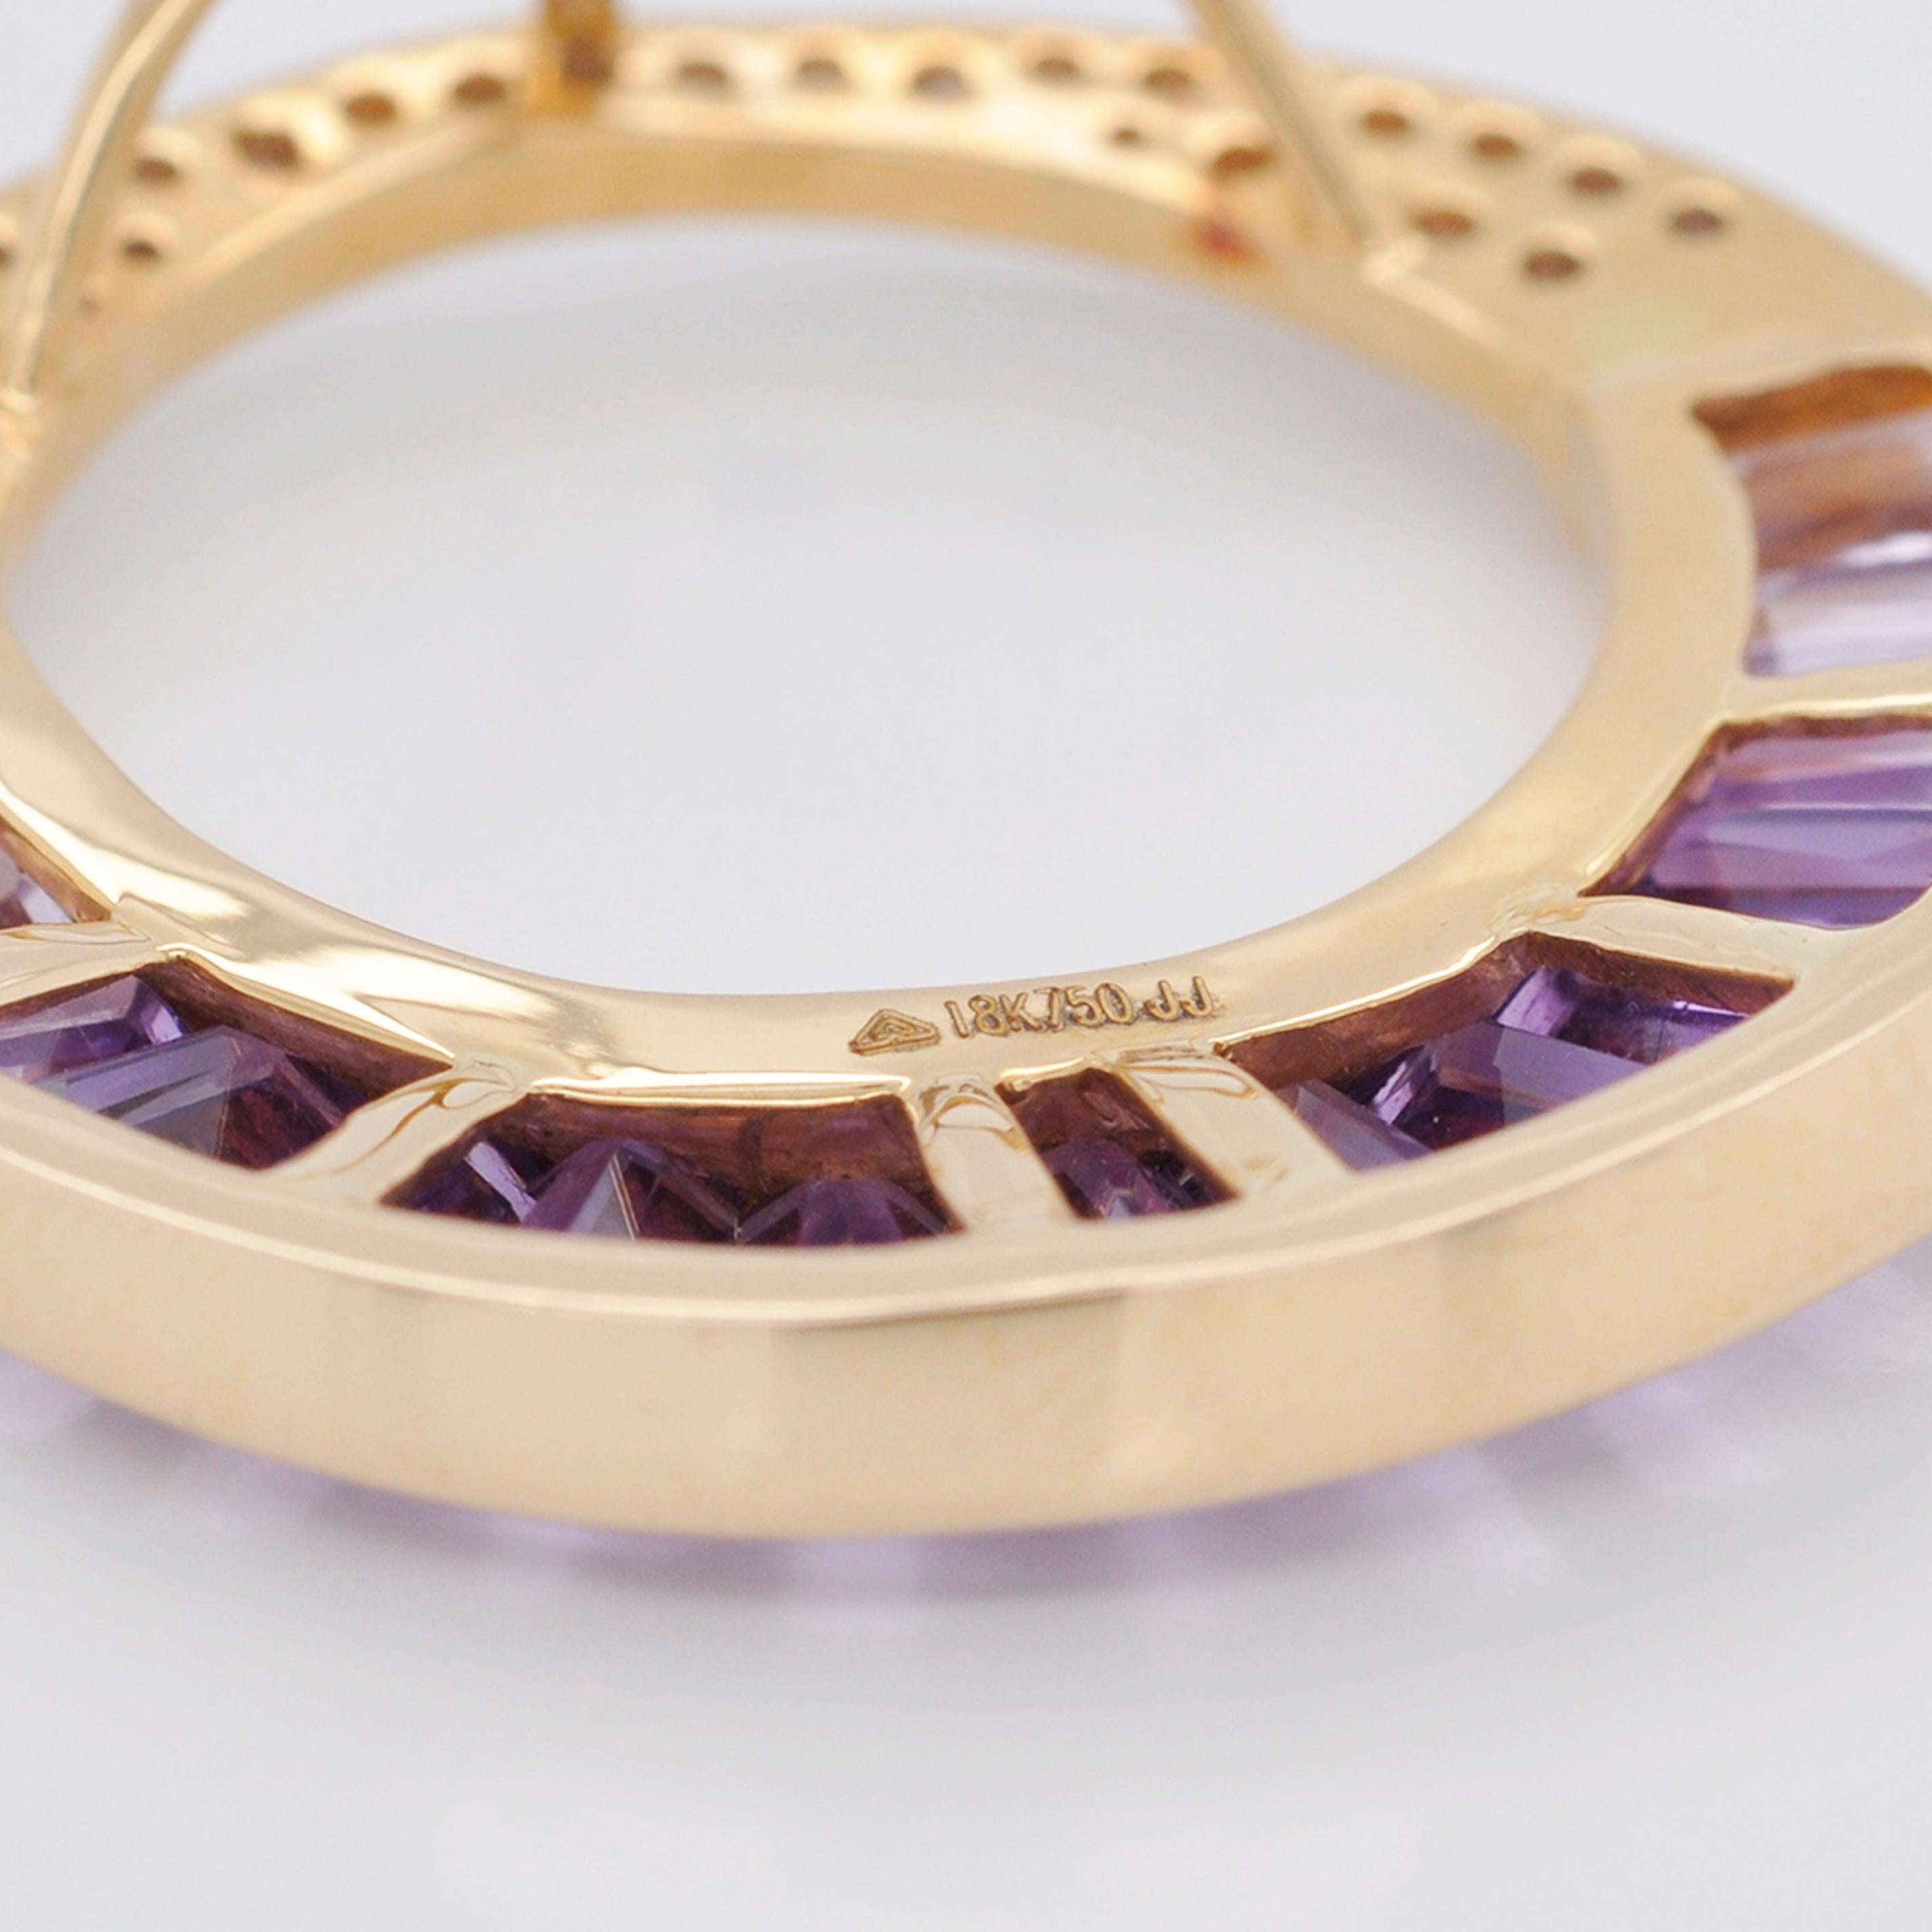 18 Karat Gold Calibre Cut Amethyst Baguette Diamond Pendant Necklace Brooch For Sale 3